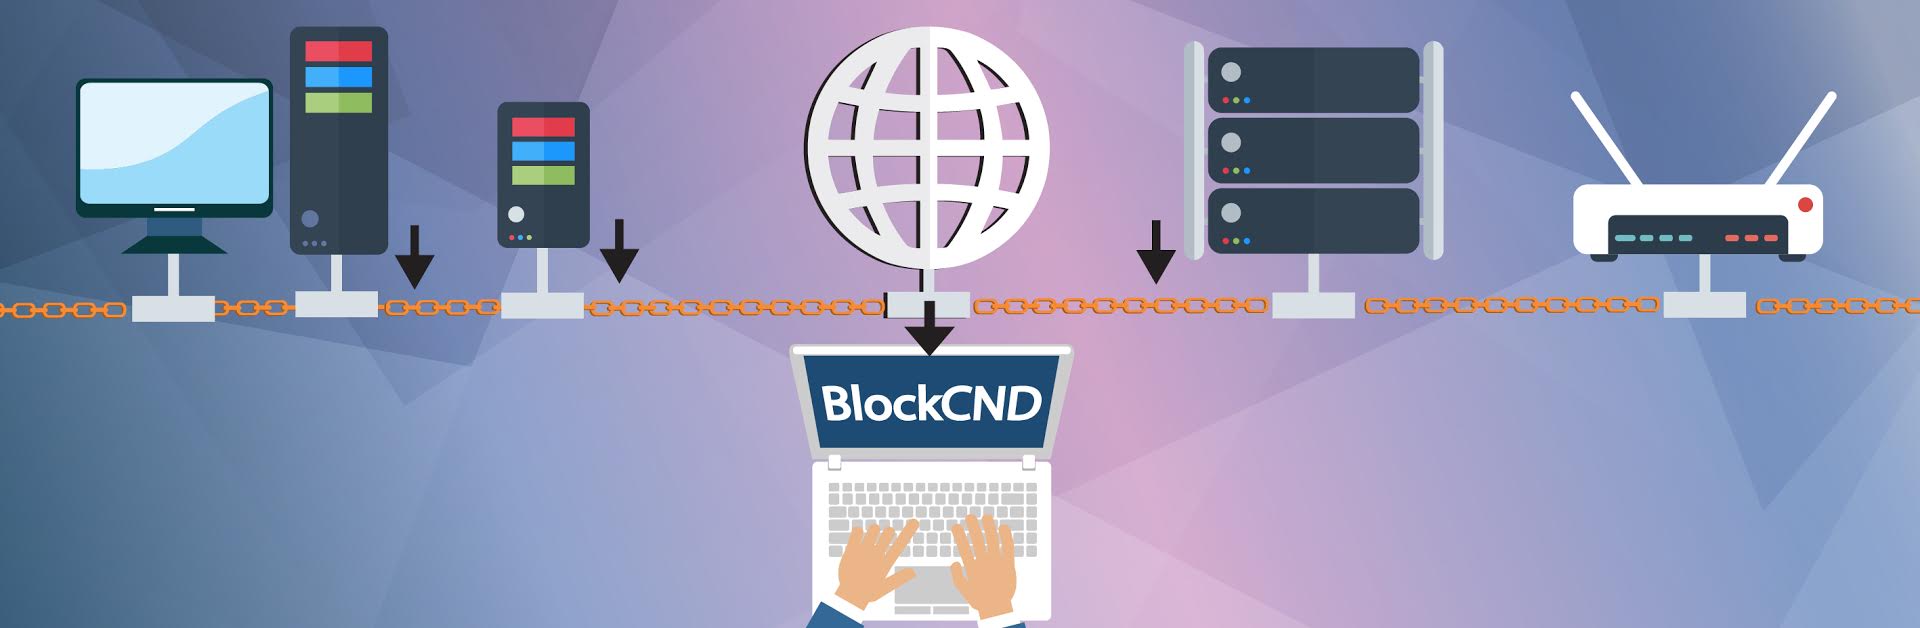 Китайский проект BlockCDN планирует заниматься продажей и покупкой контента